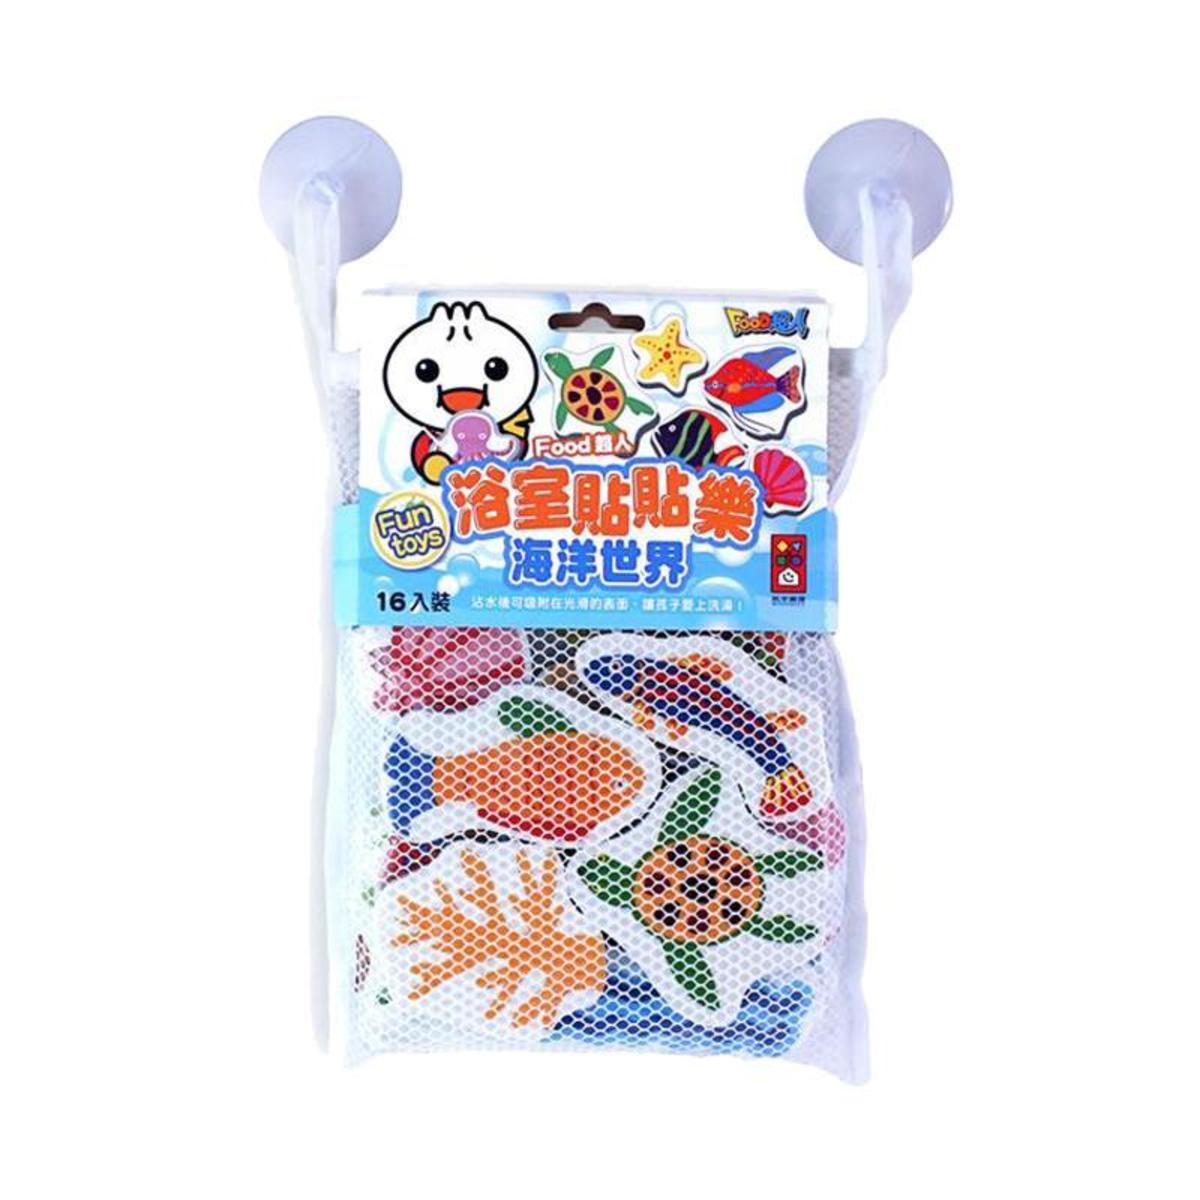 Food超人浴室貼貼樂 (3歲以上) 台灣進口 (3款) - 海洋世界